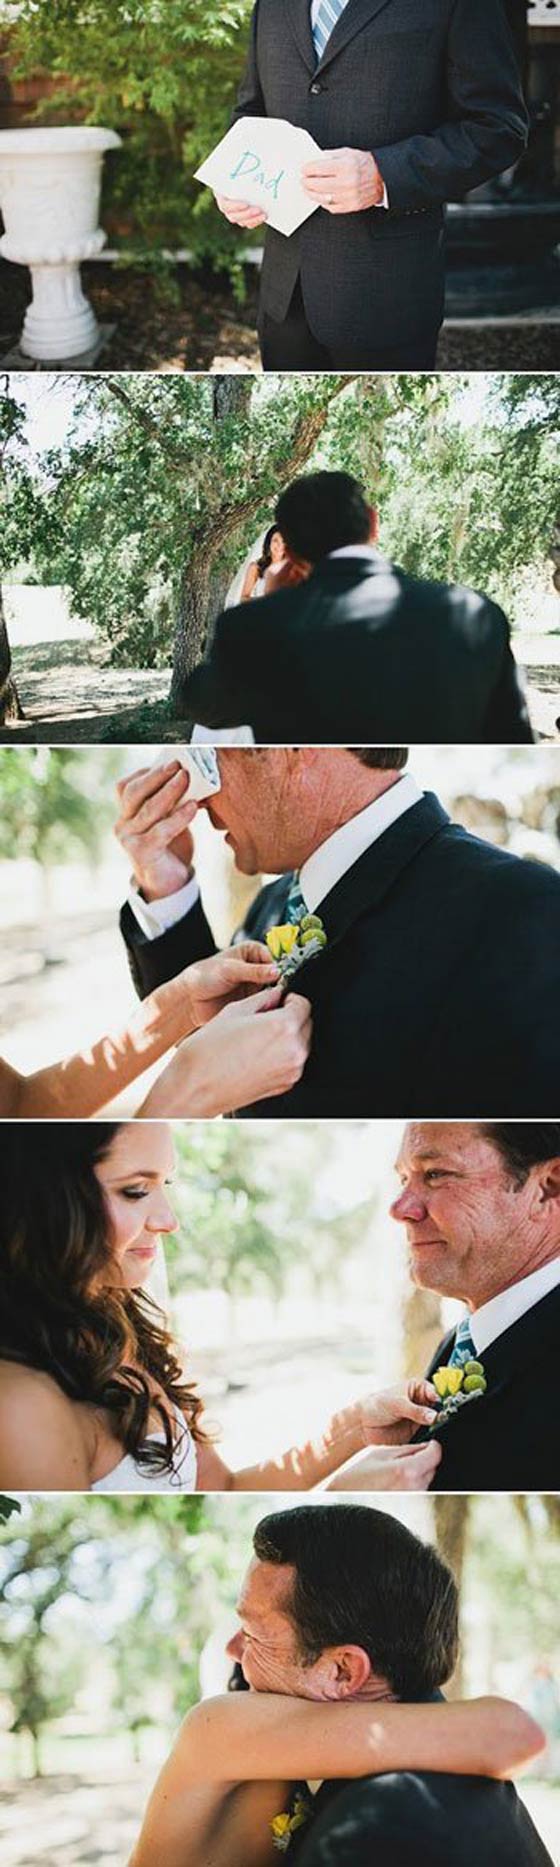 صور عرائس يوم الزفاف في لقطات مؤثرة مع الآباء صورة رقم 2